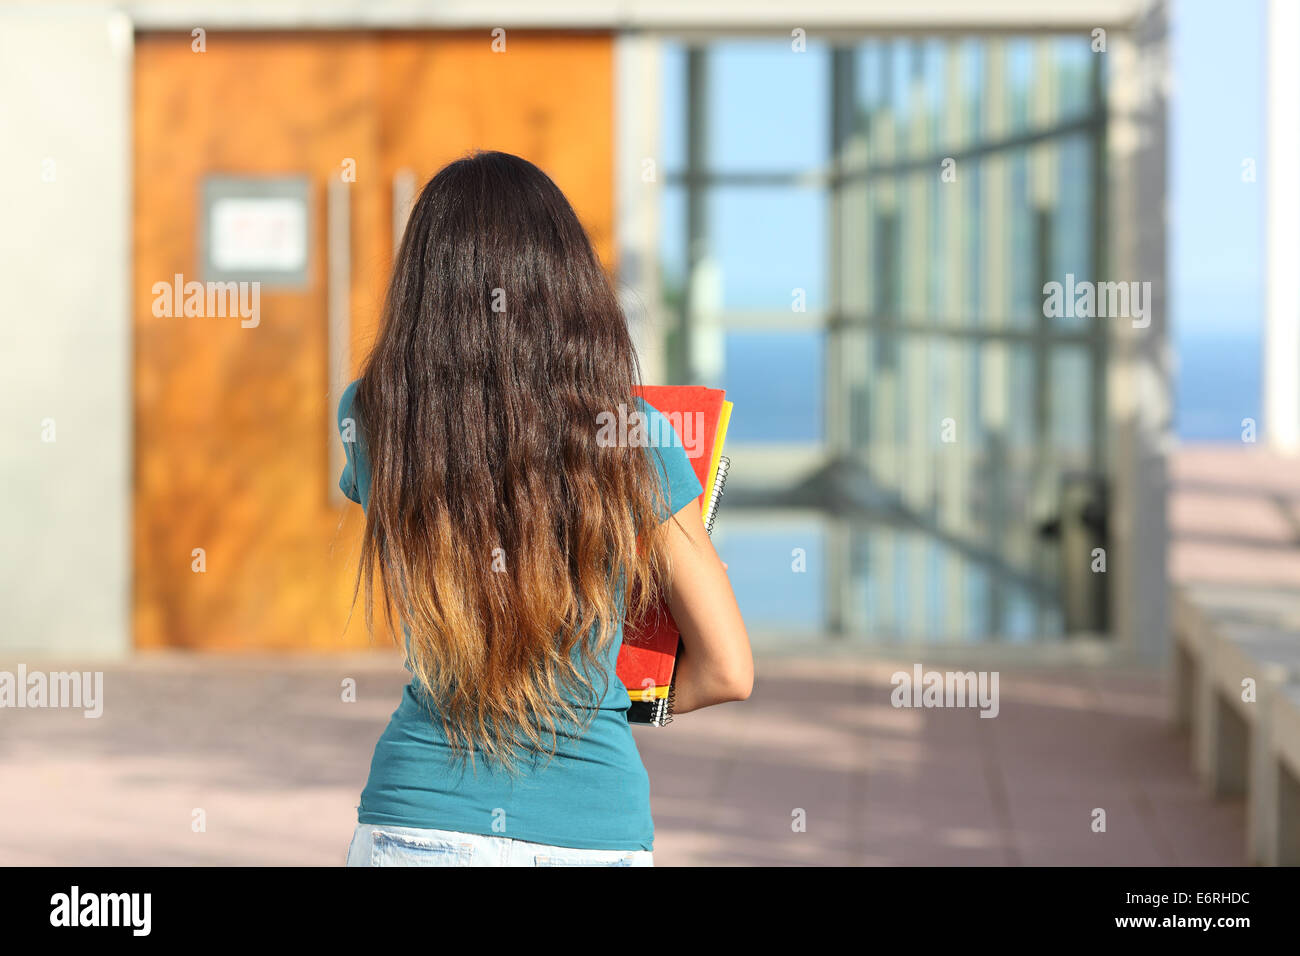 Rückansicht des Teen Girl zu Fuß in Richtung der Schule mit der Tür im Hintergrund Stockfoto